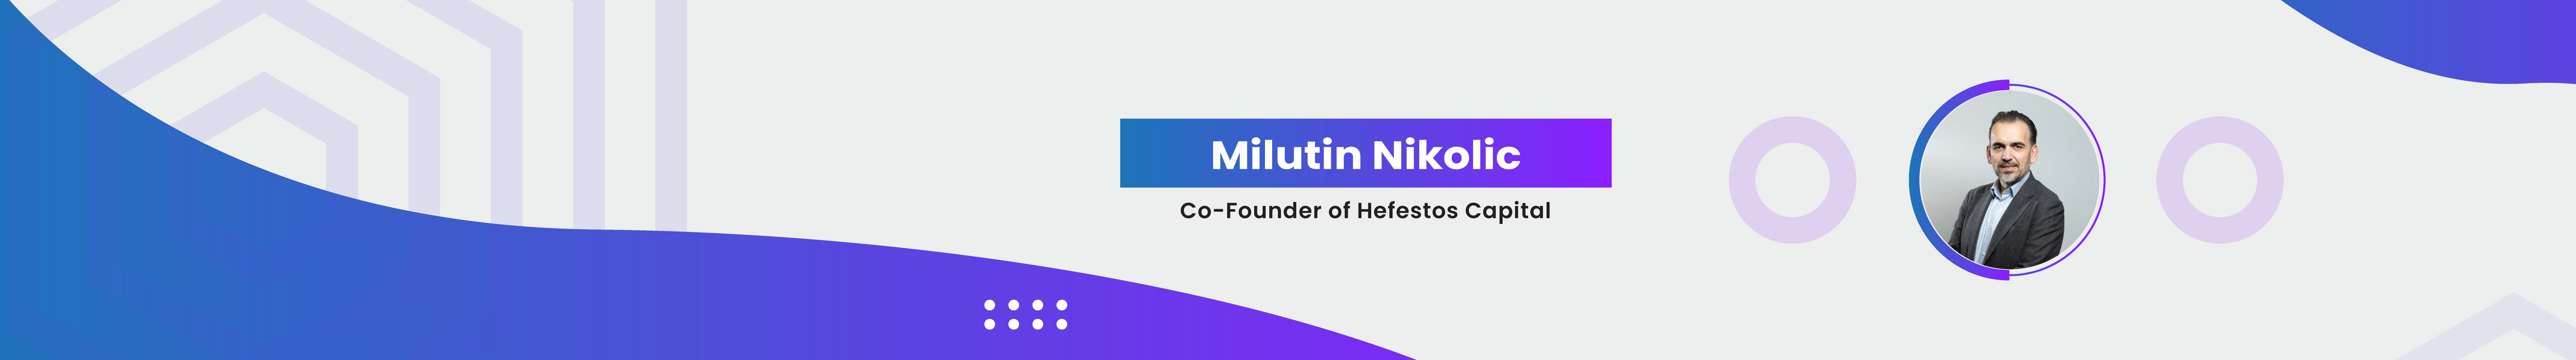 Milutin Nikolic のプロファイルバナー